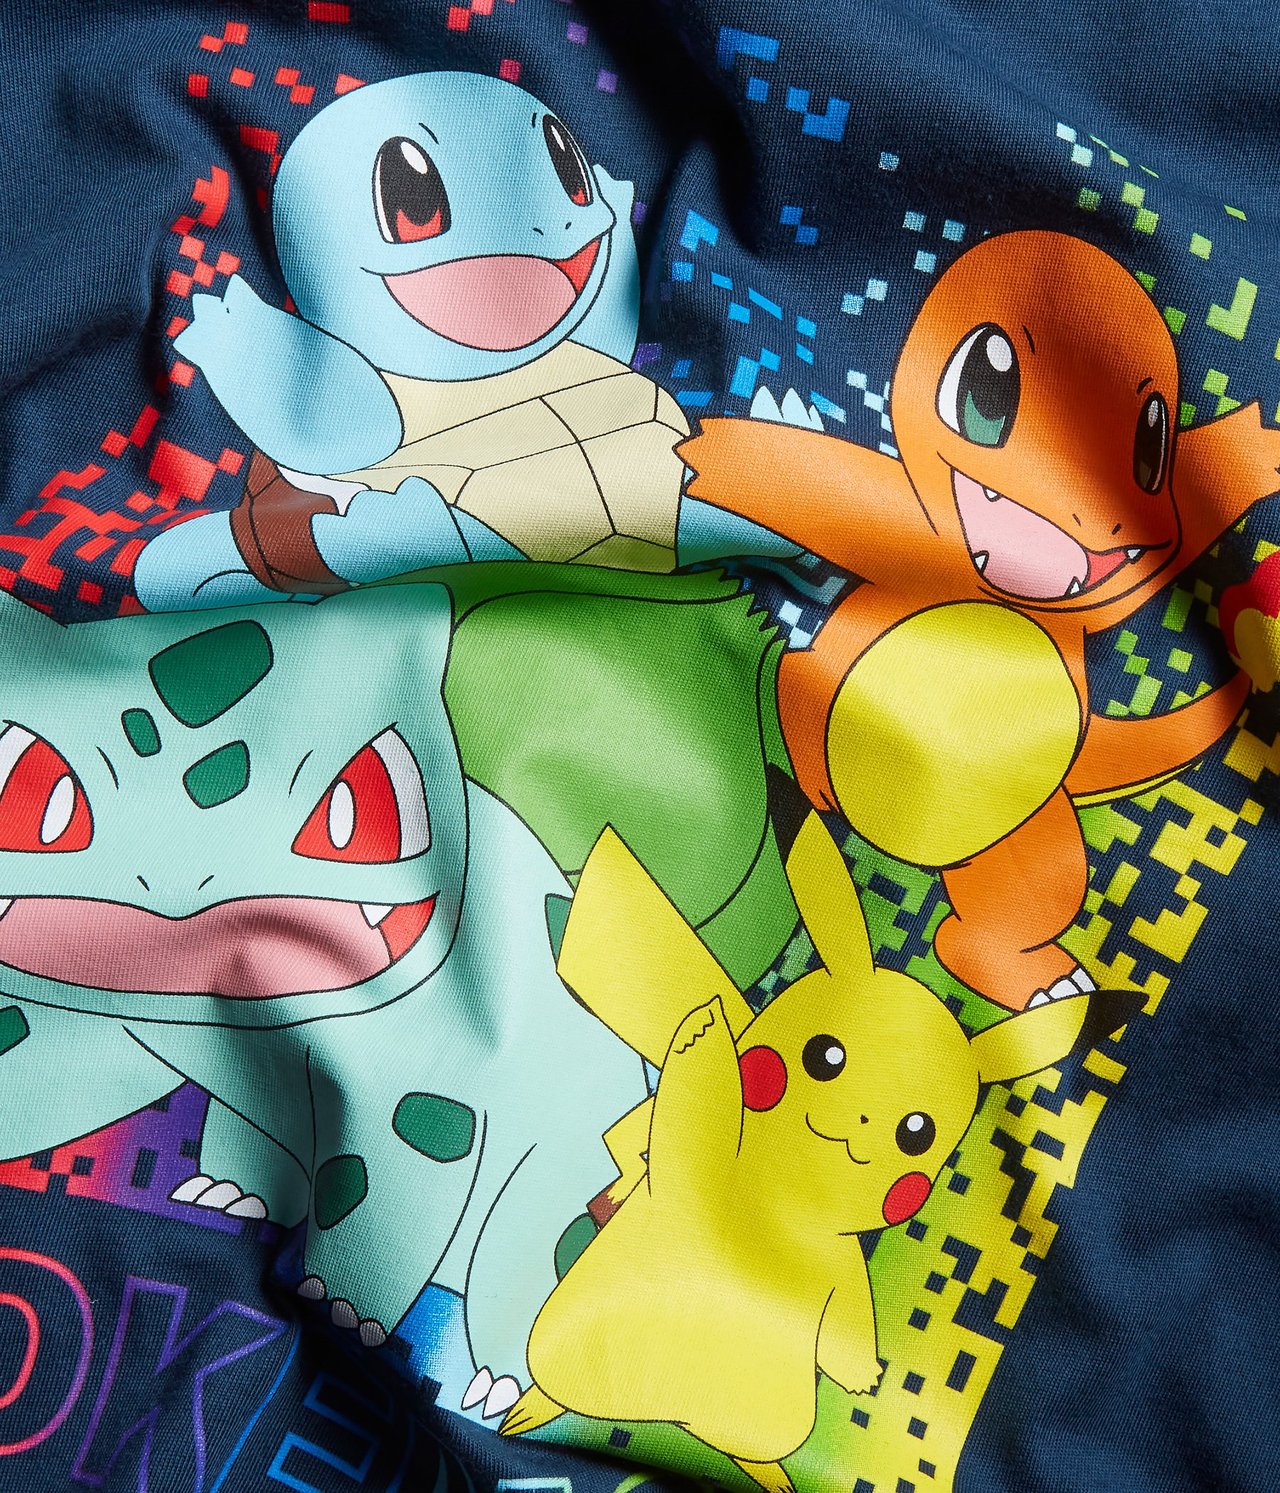 T-shirt Pokémon Mörkblå - null - 4